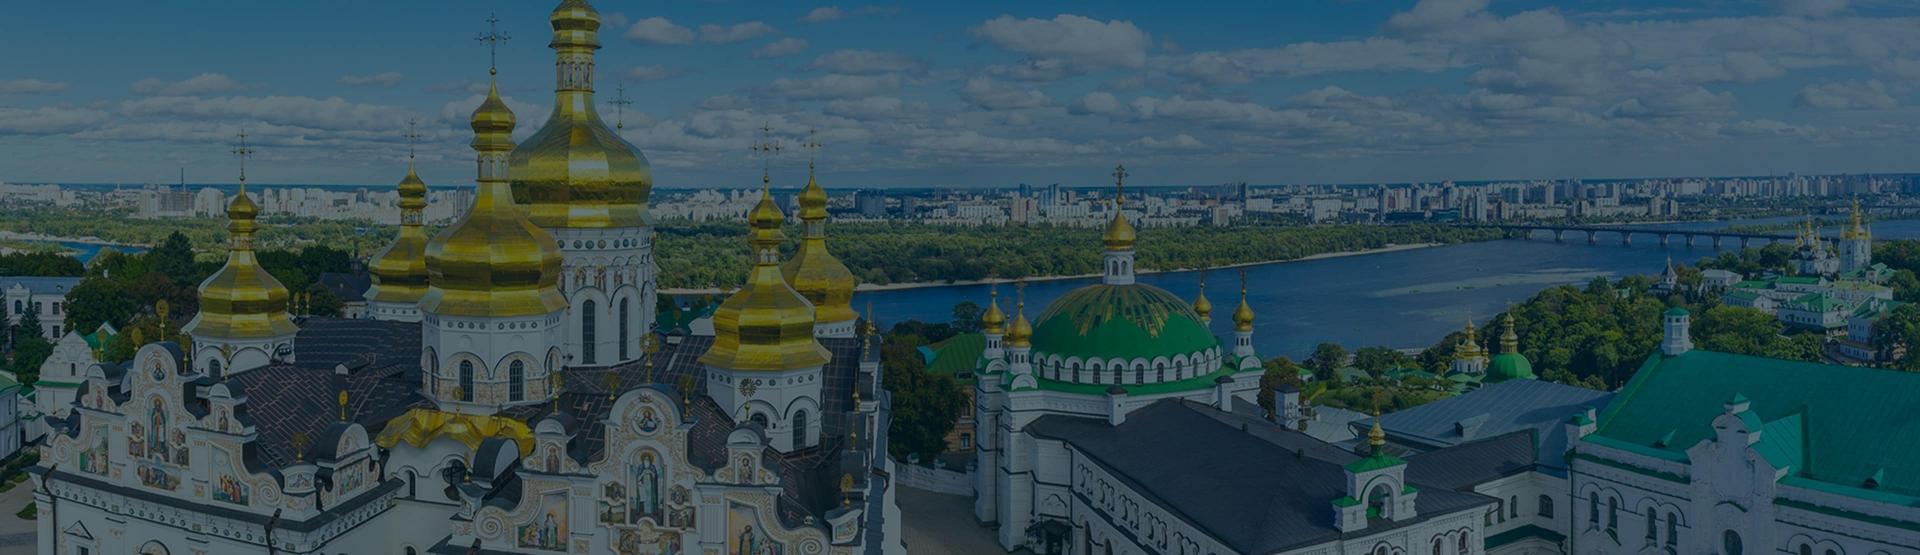 ابحث عن أفضل الفنادق في كييف